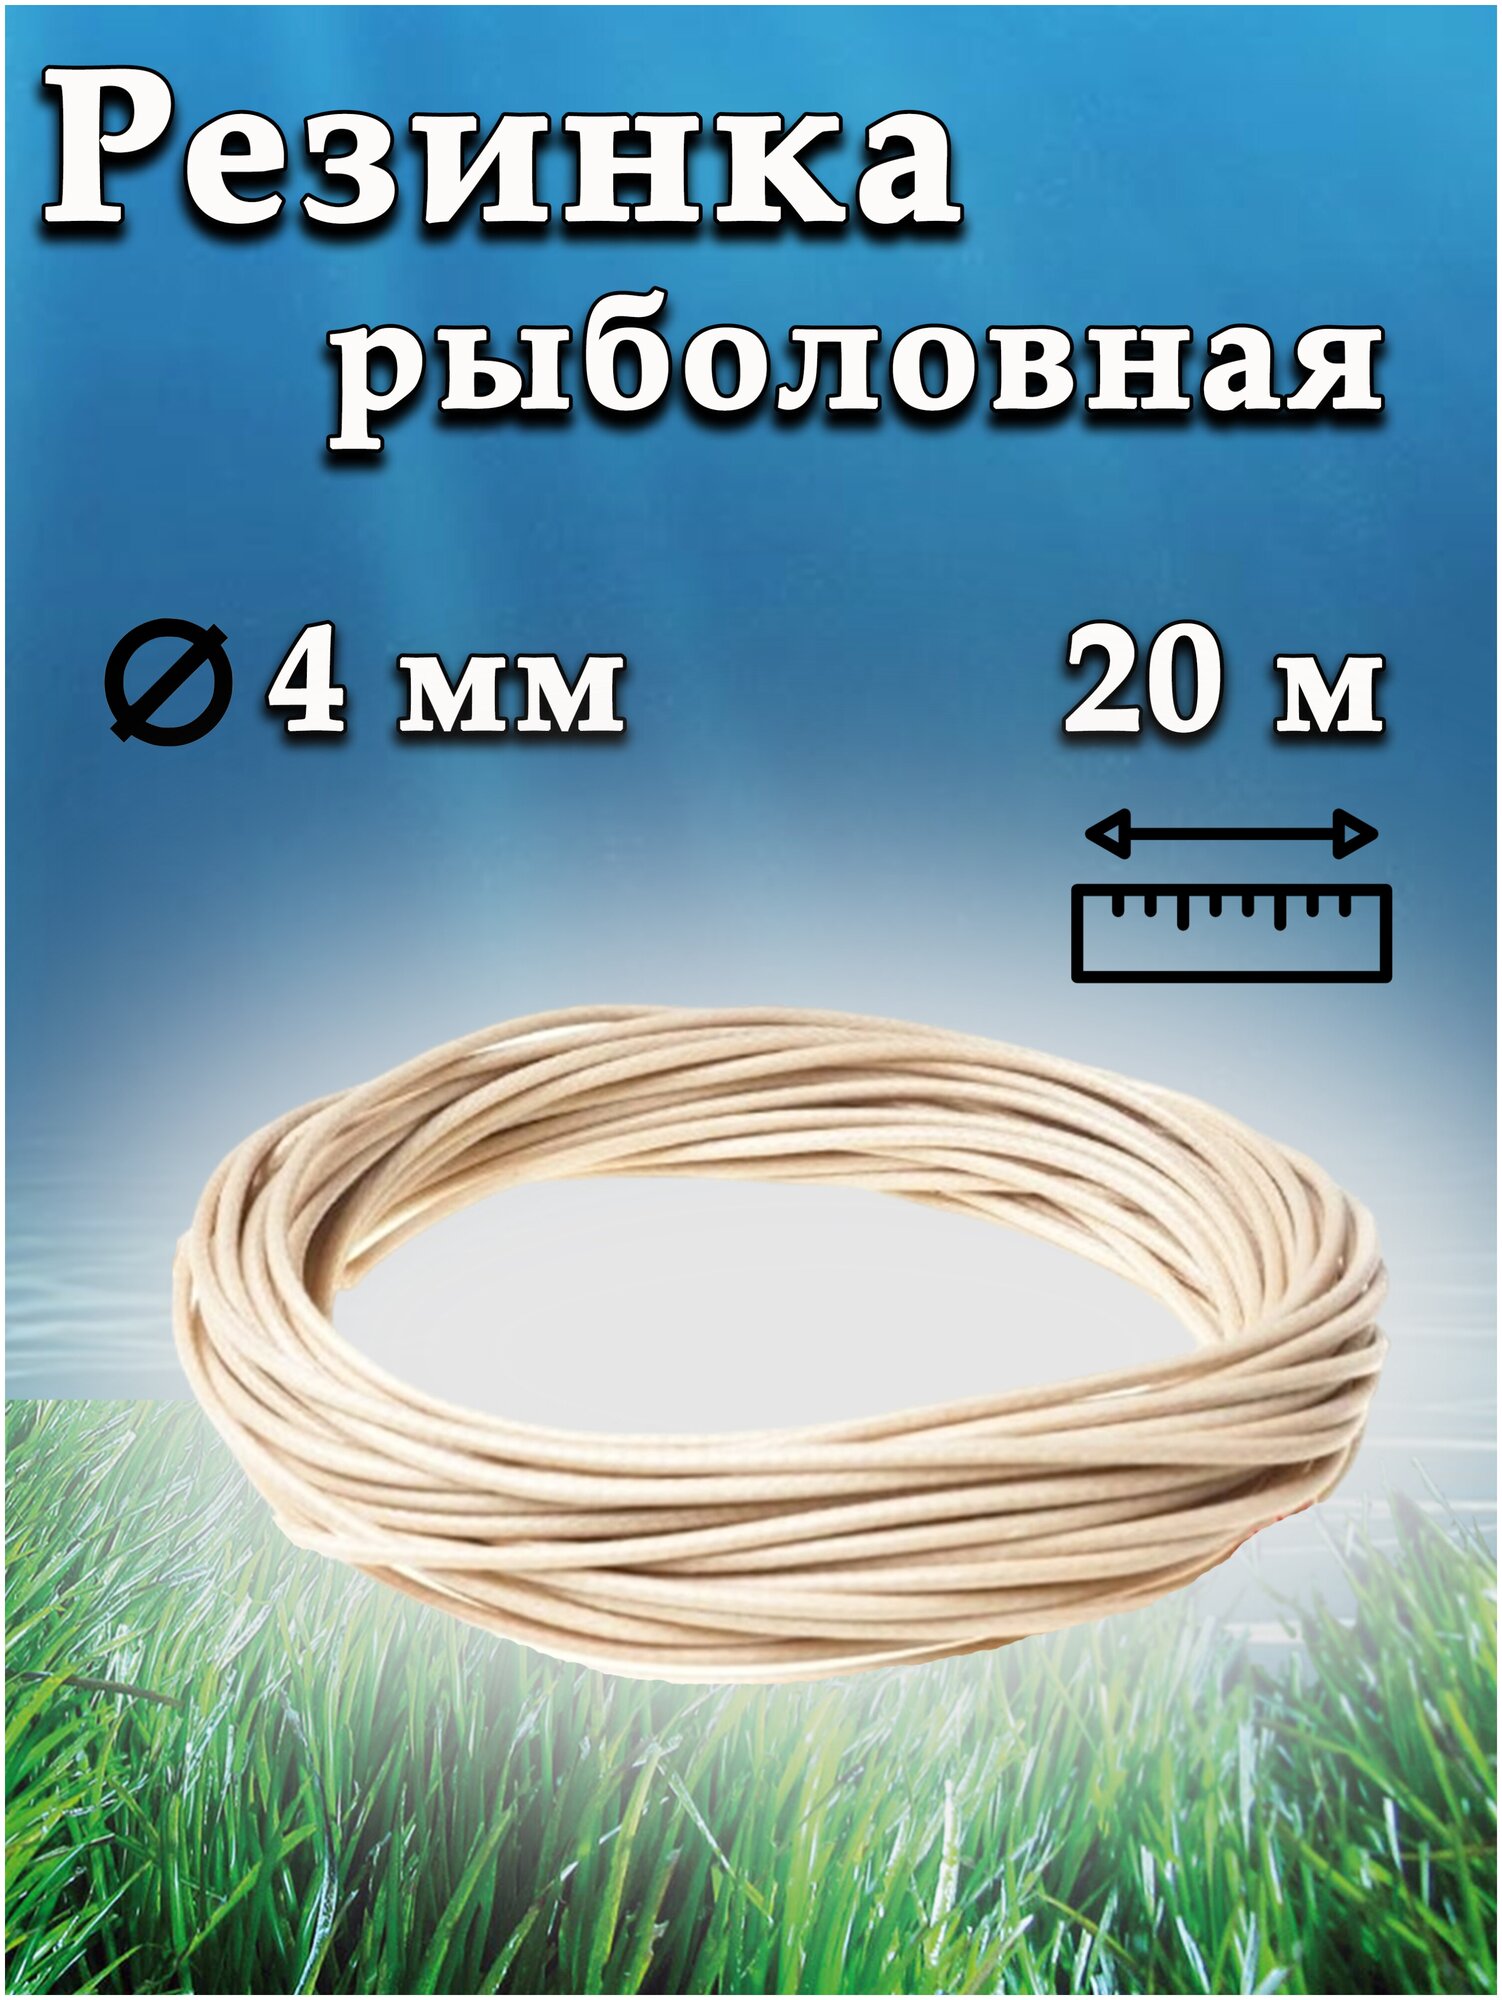 Резинка рыболовная / резинка для донки бежевая / 20 метров / D-4 мм —купить в интернет-магазине по низкой цене на Яндекс Маркете